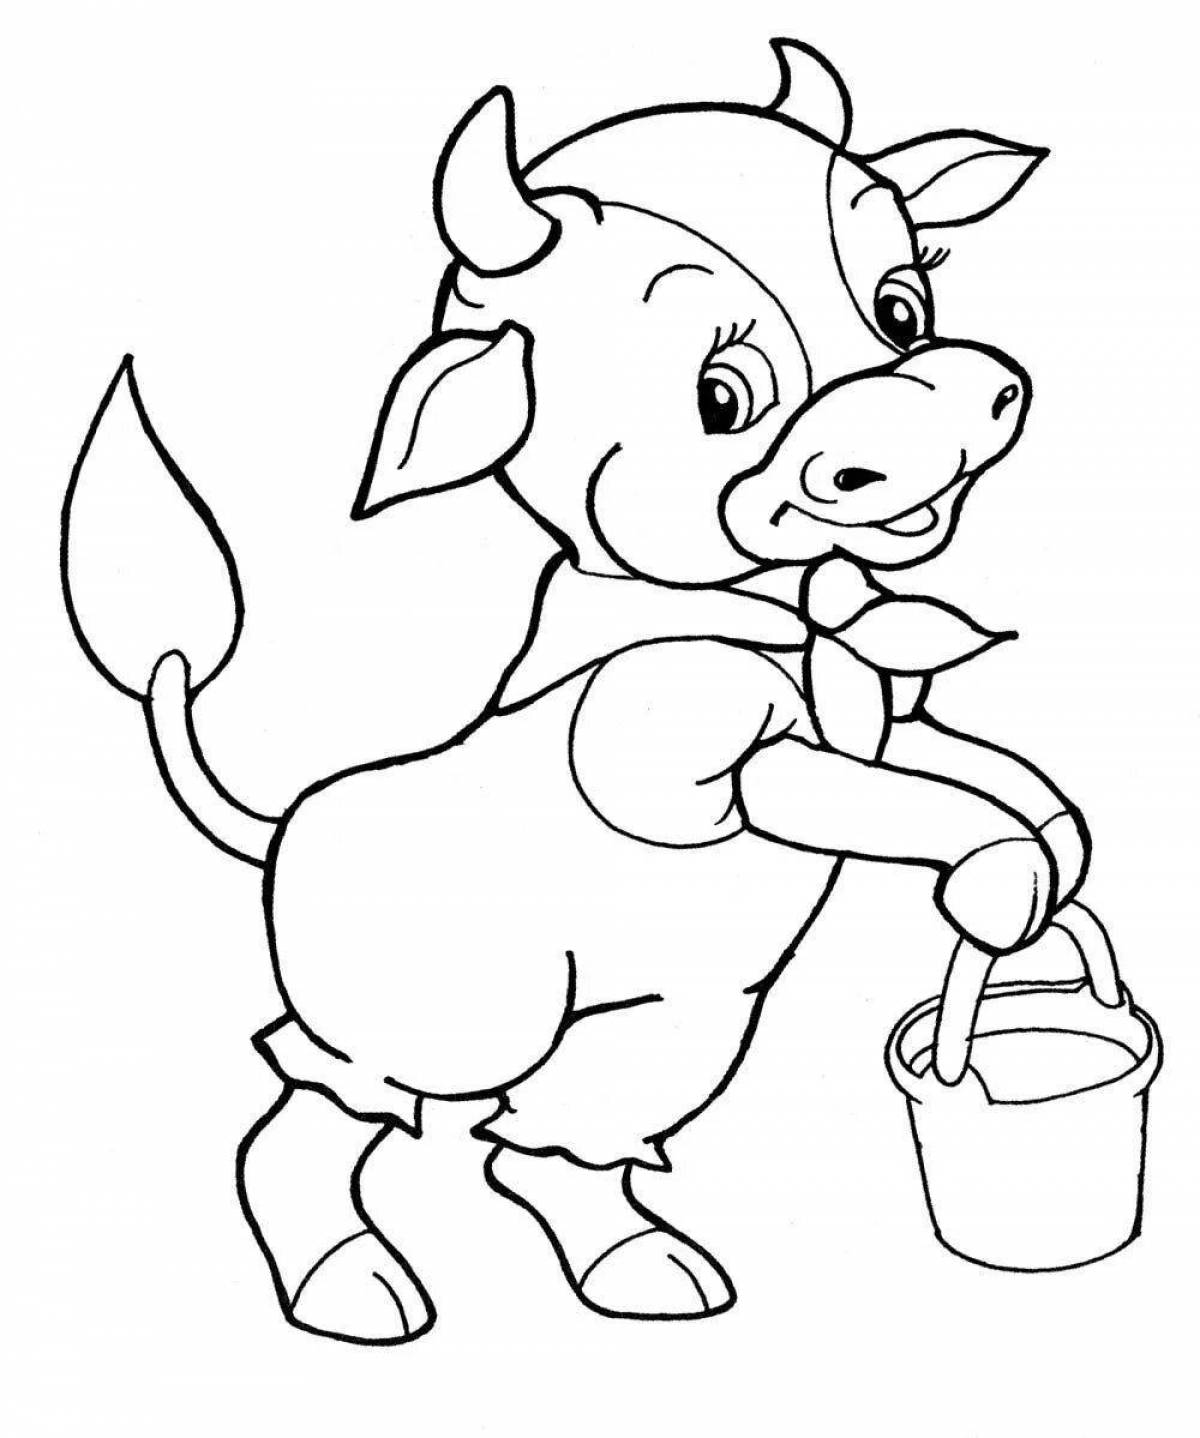 Забавная раскраска теленка для детей